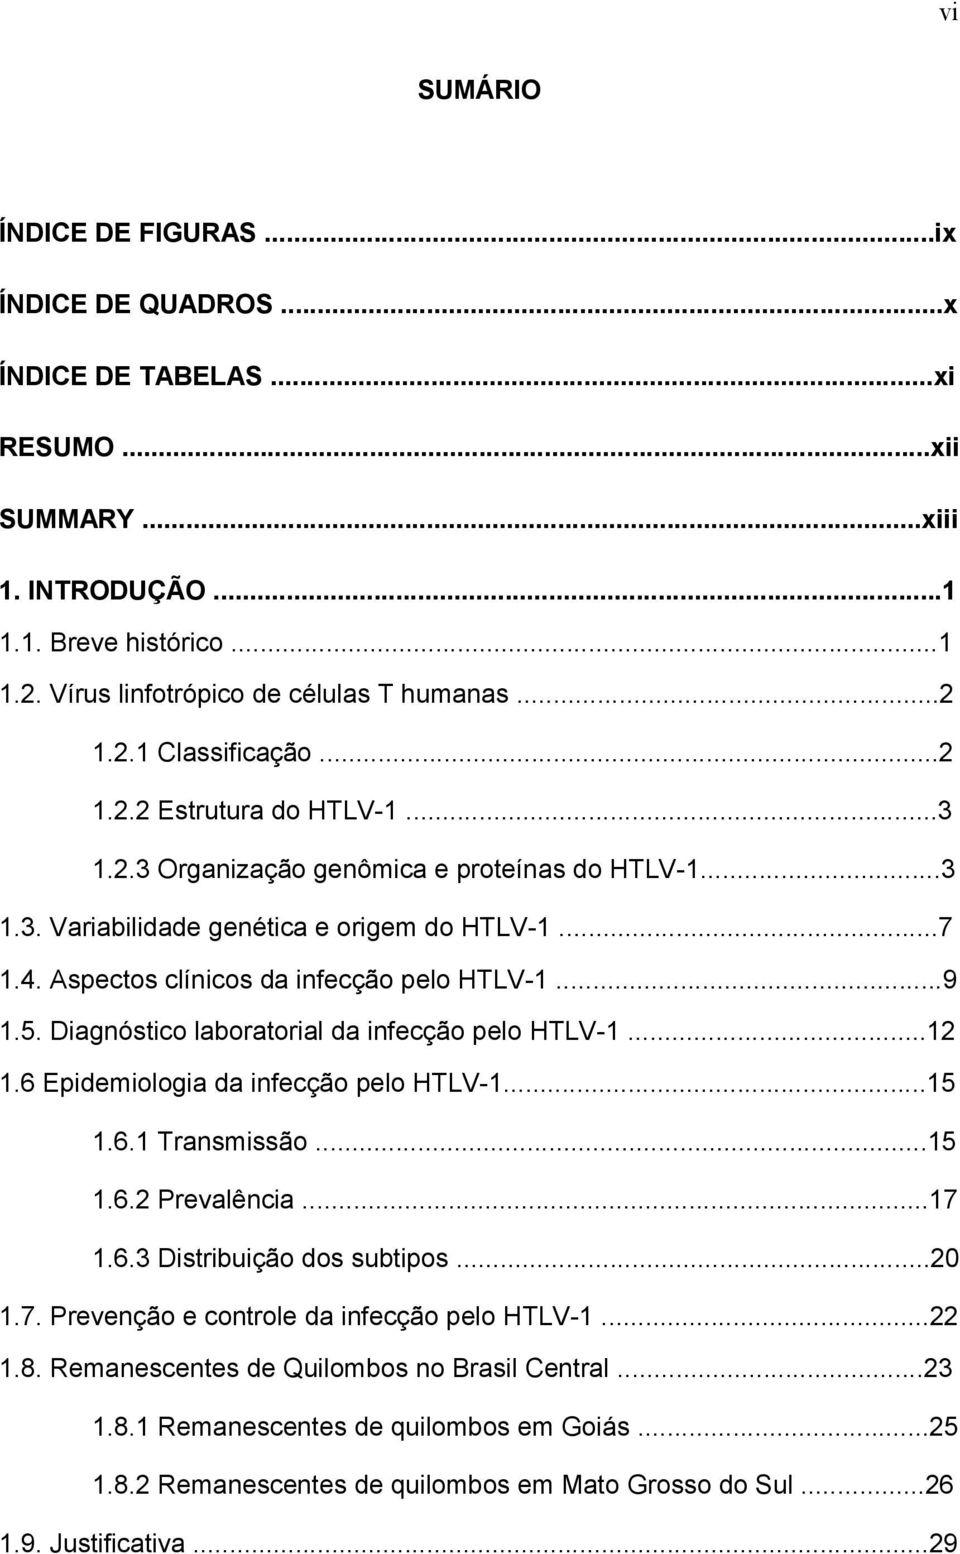 Aspectos clínicos da infecção pelo HTLV-1...9 1.5. Diagnóstico laboratorial da infecção pelo HTLV-1...12 1.6 Epidemiologia da infecção pelo HTLV-1...15 1.6.1 Transmissão...15 1.6.2 Prevalência...17 1.